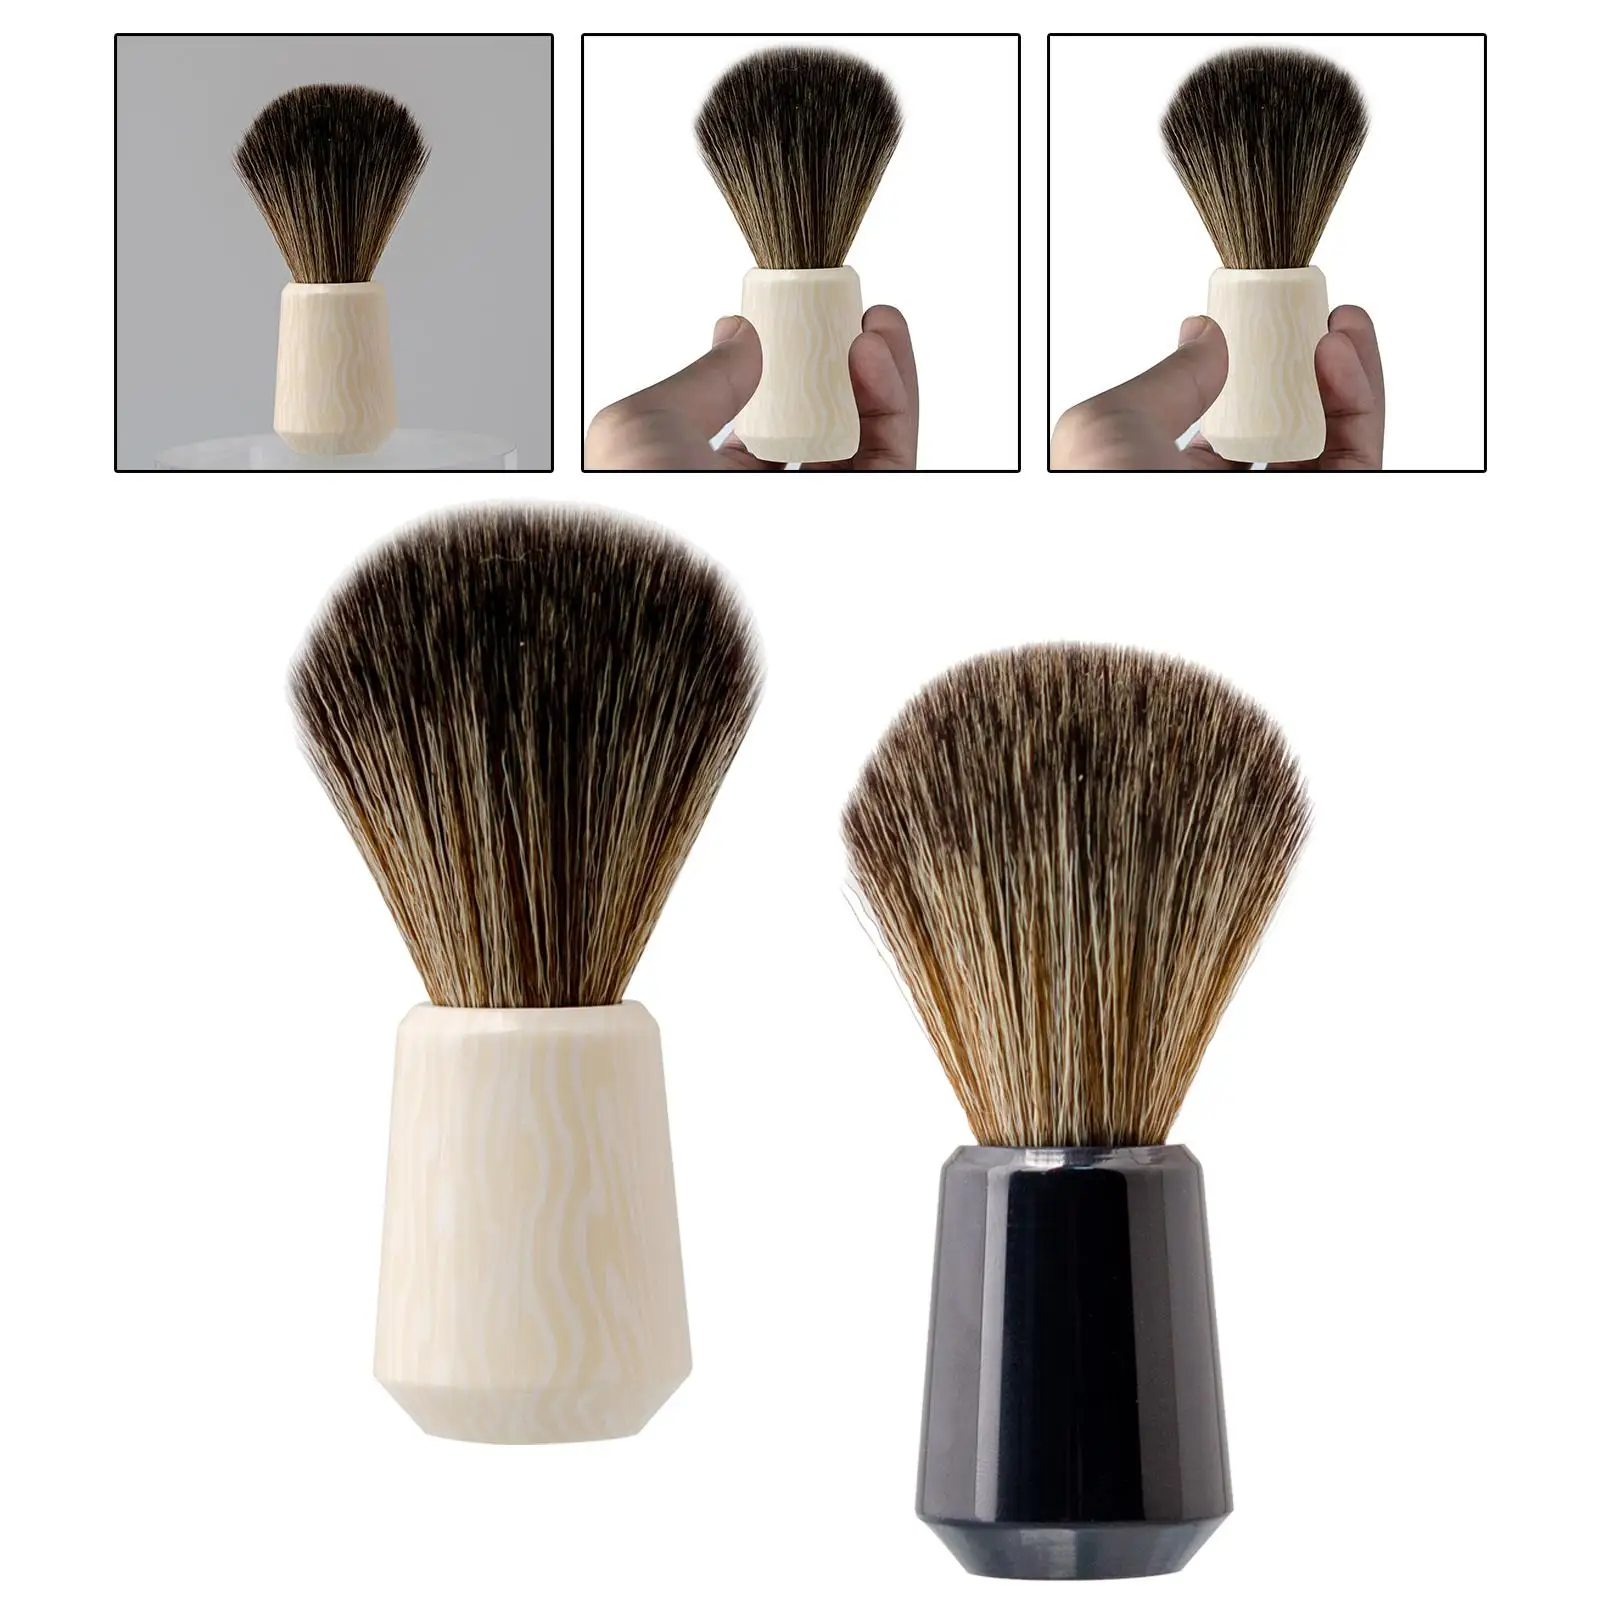 Beard Shaving Brush Portable Easy Foaming for Wet Shave Accessories Lightweight Nylon Bristles for Barbershop Travel Hair Salon